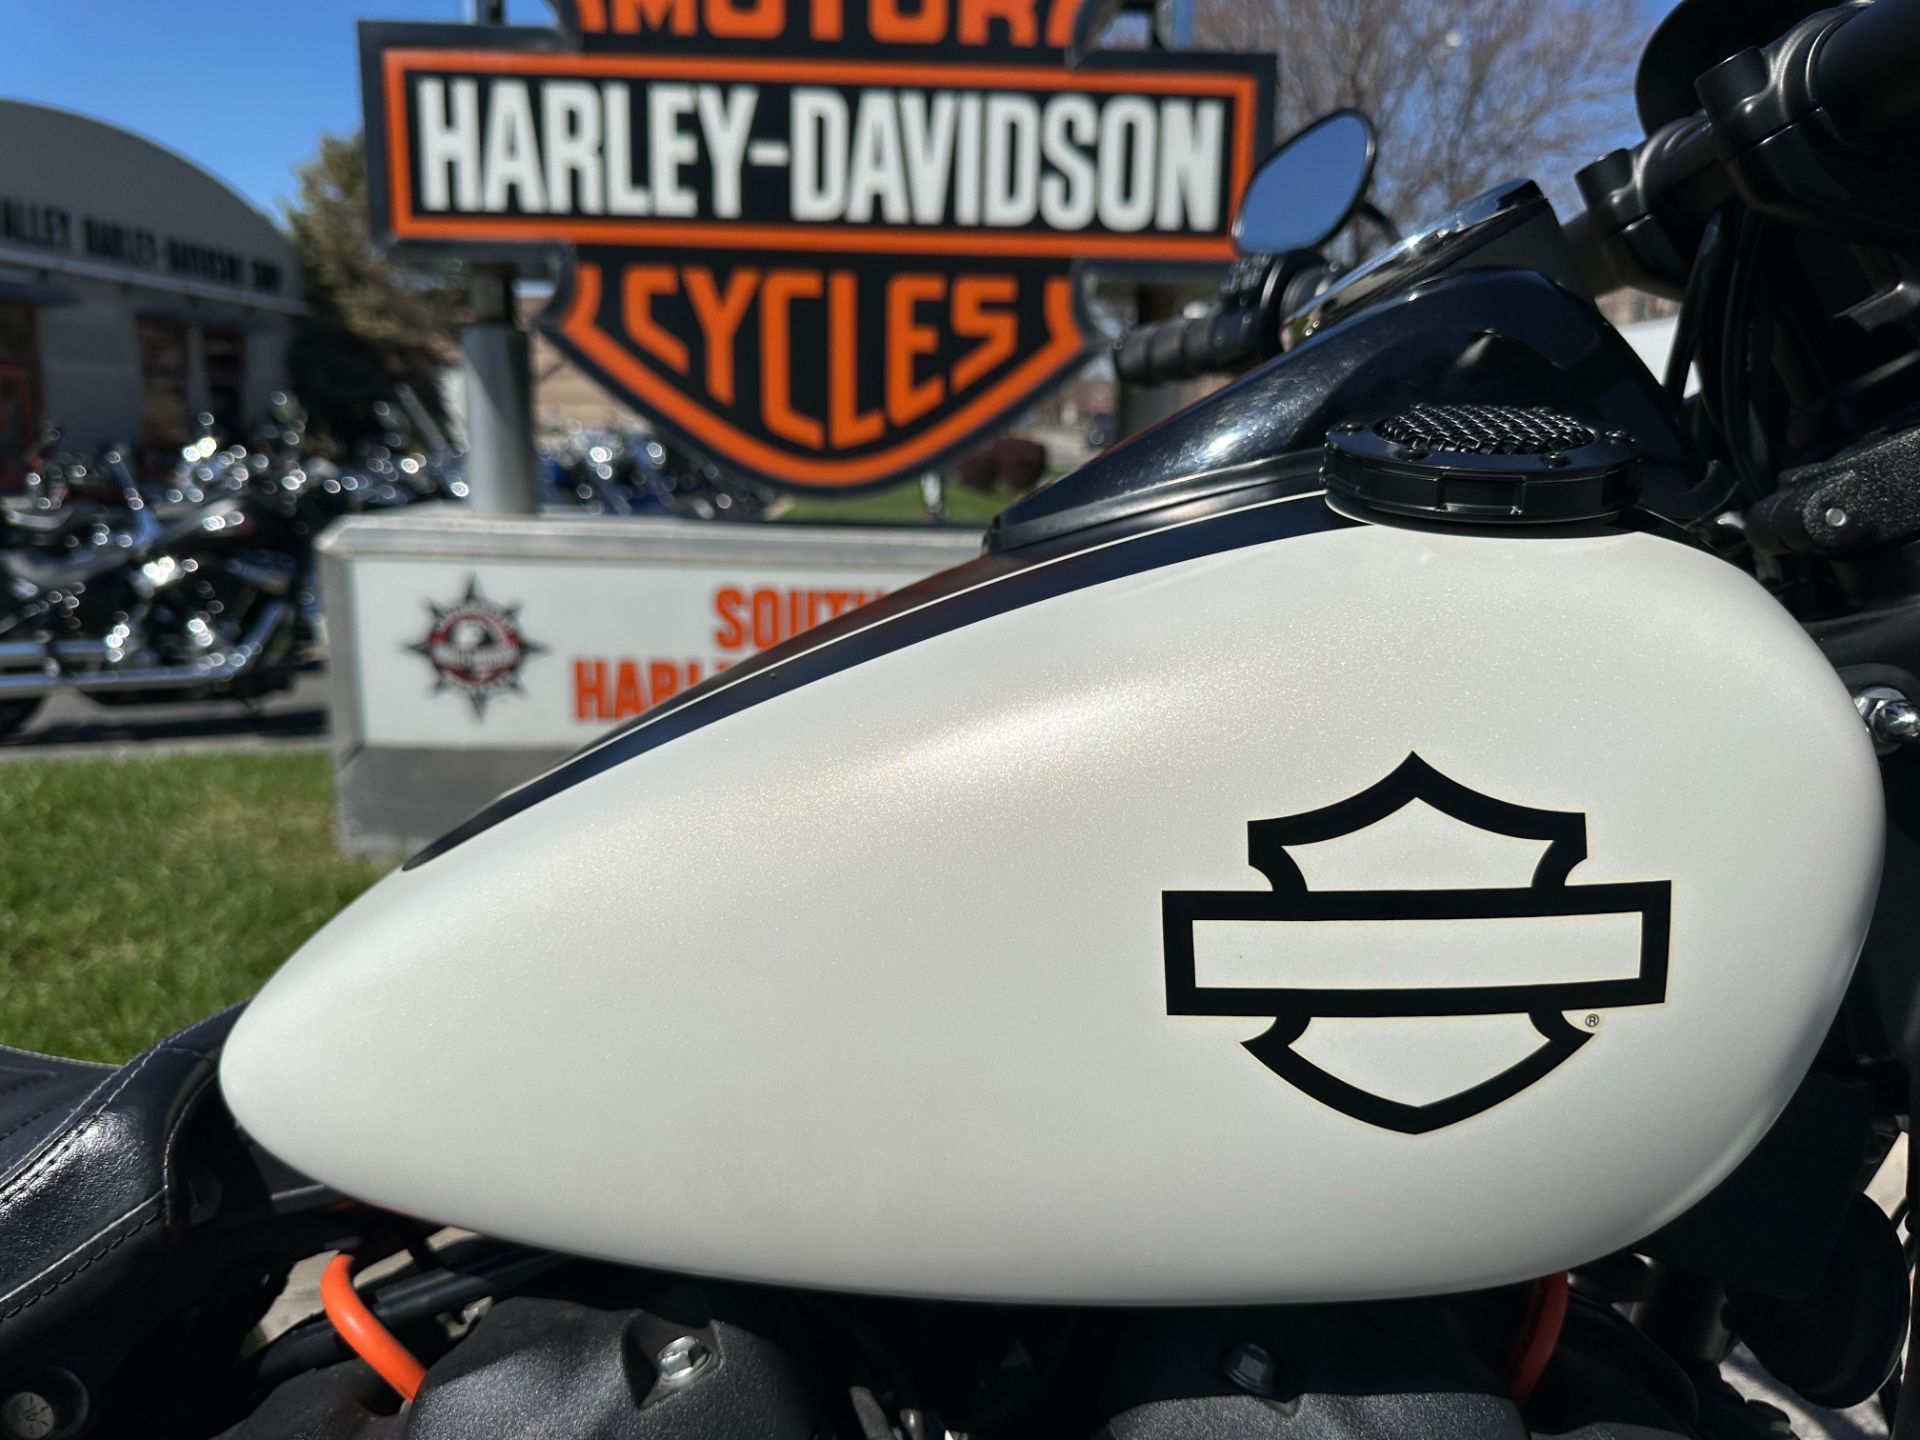 2018 Harley-Davidson Fat Bob® 107 in Sandy, Utah - Photo 3